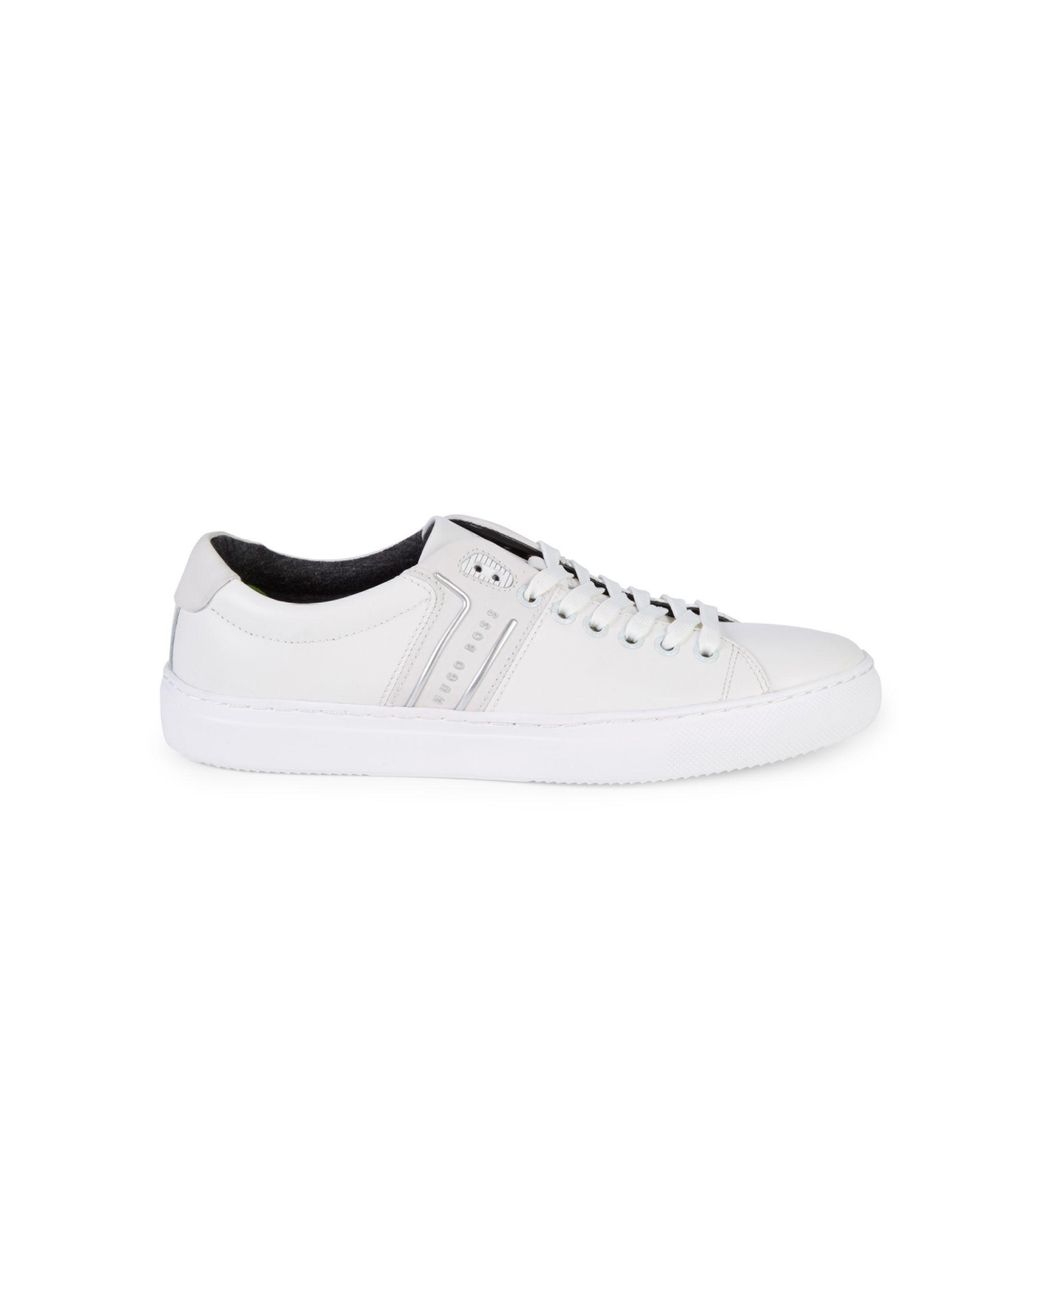 BOSS by HUGO BOSS Enlight Tennis Sneakers in White for Men | Lyst